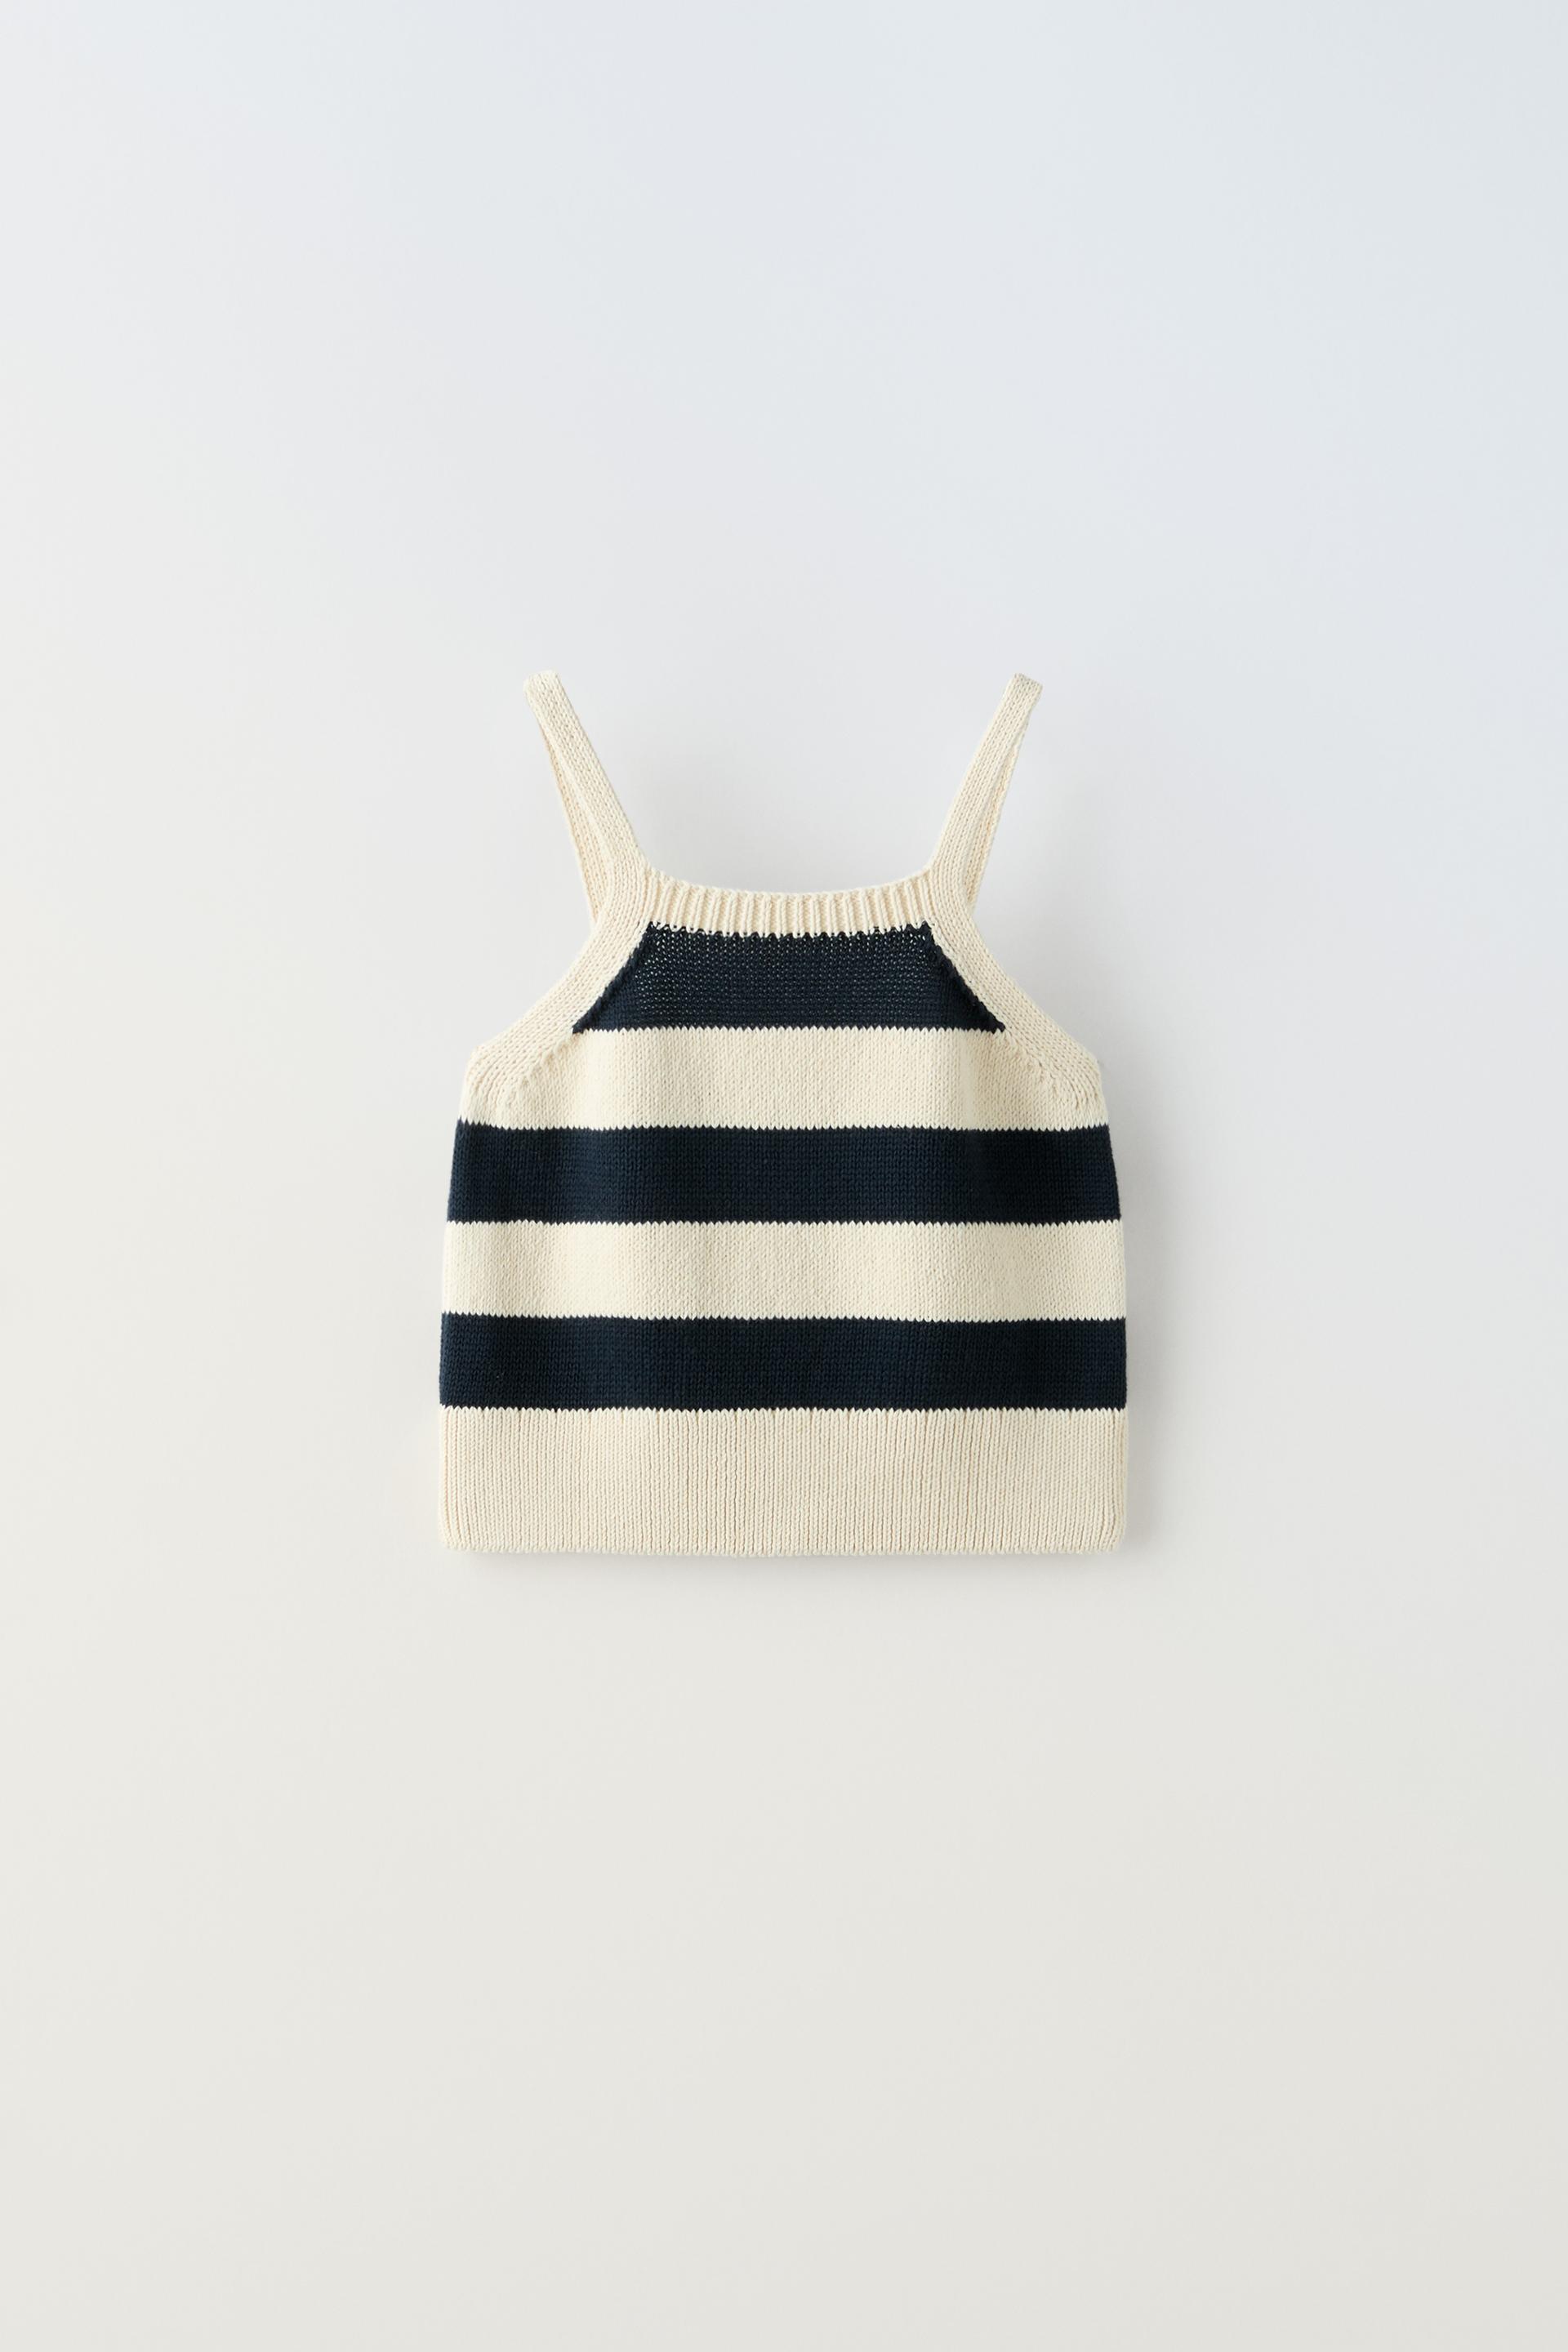 Топ Zara Striped Knit, светло-бежевый топ zara striped knit светло бежевый